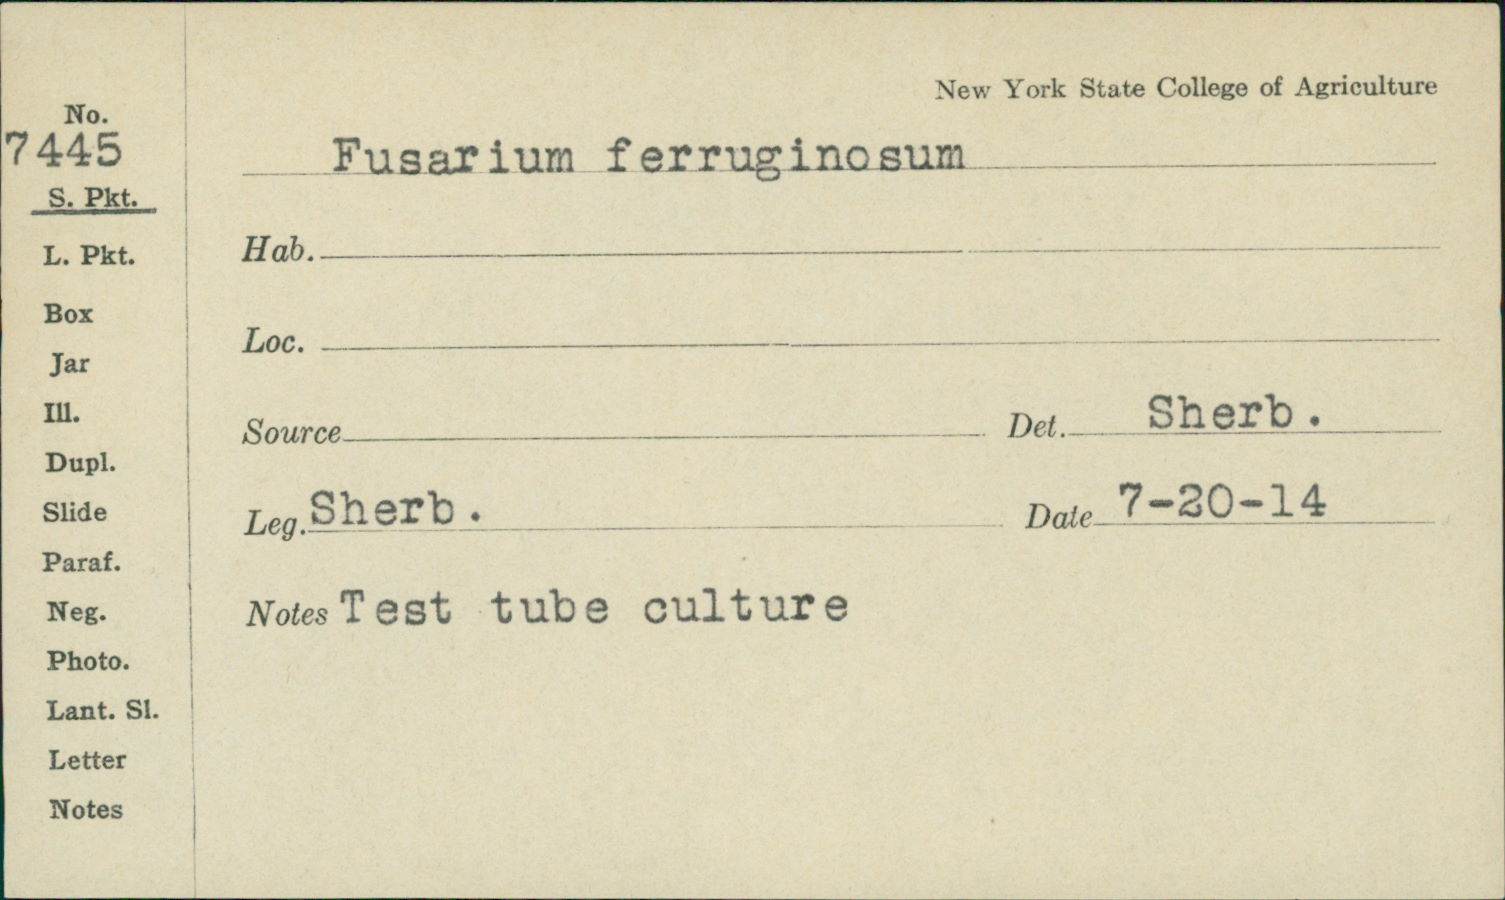 Fusarium ferruginosum image